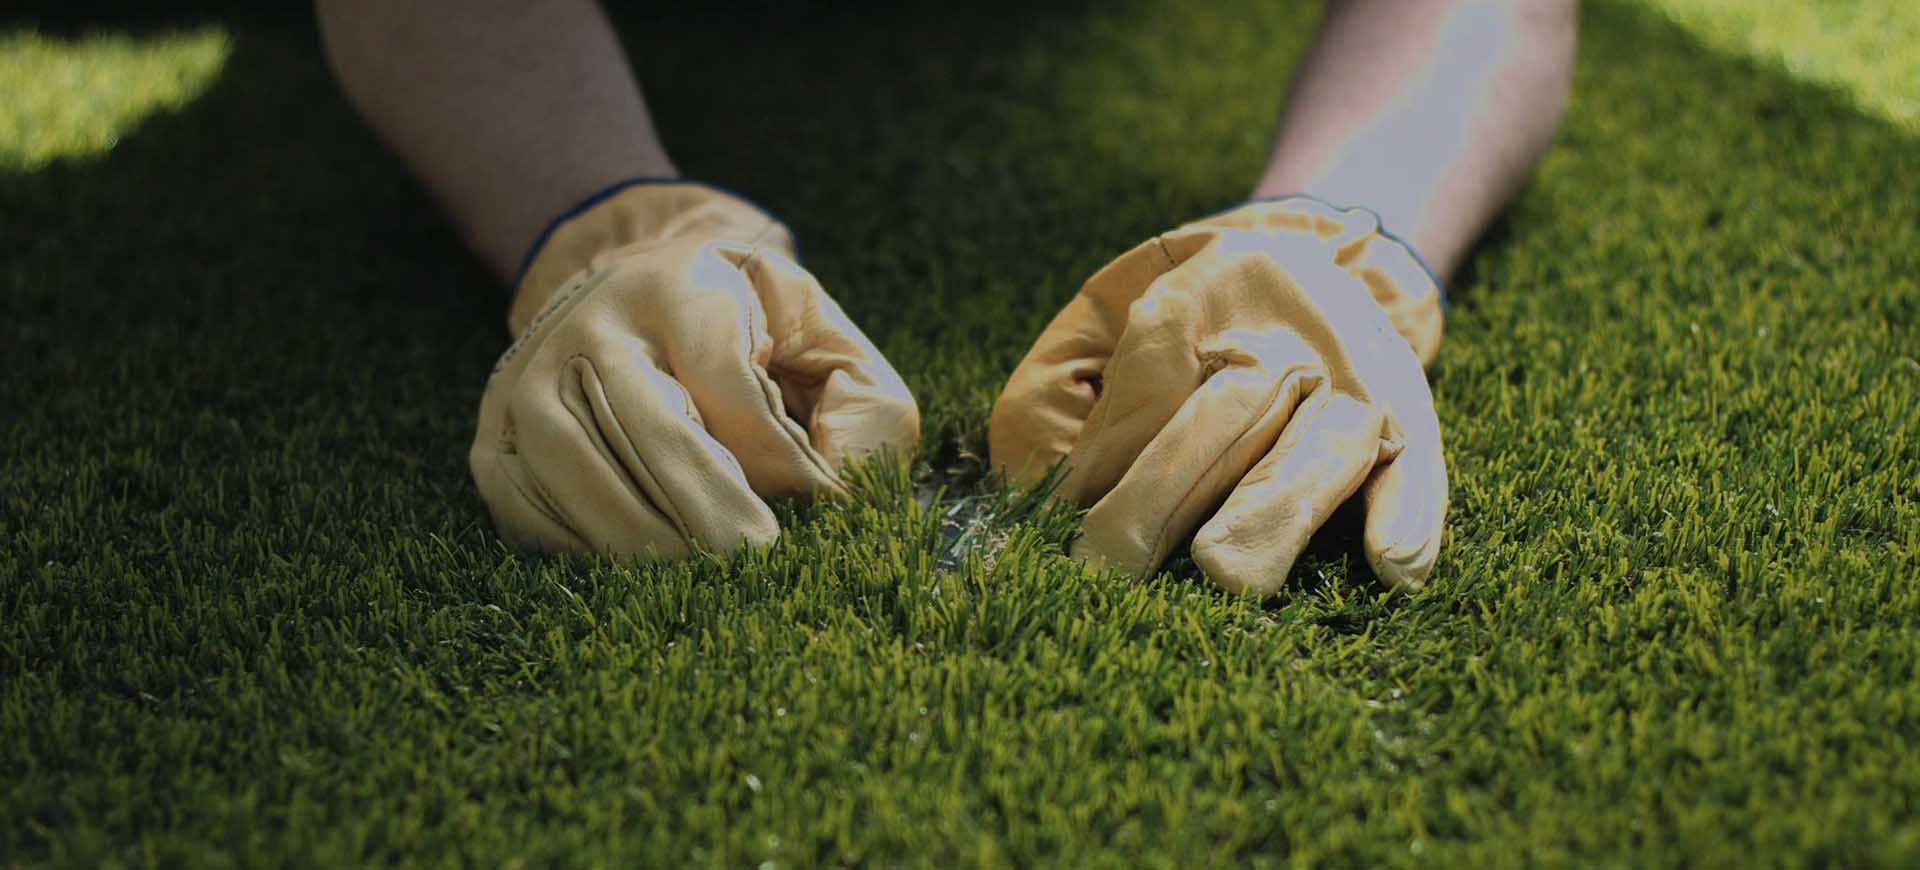 uma pessoa colocando as mãos com luva em um campo de grama artificial